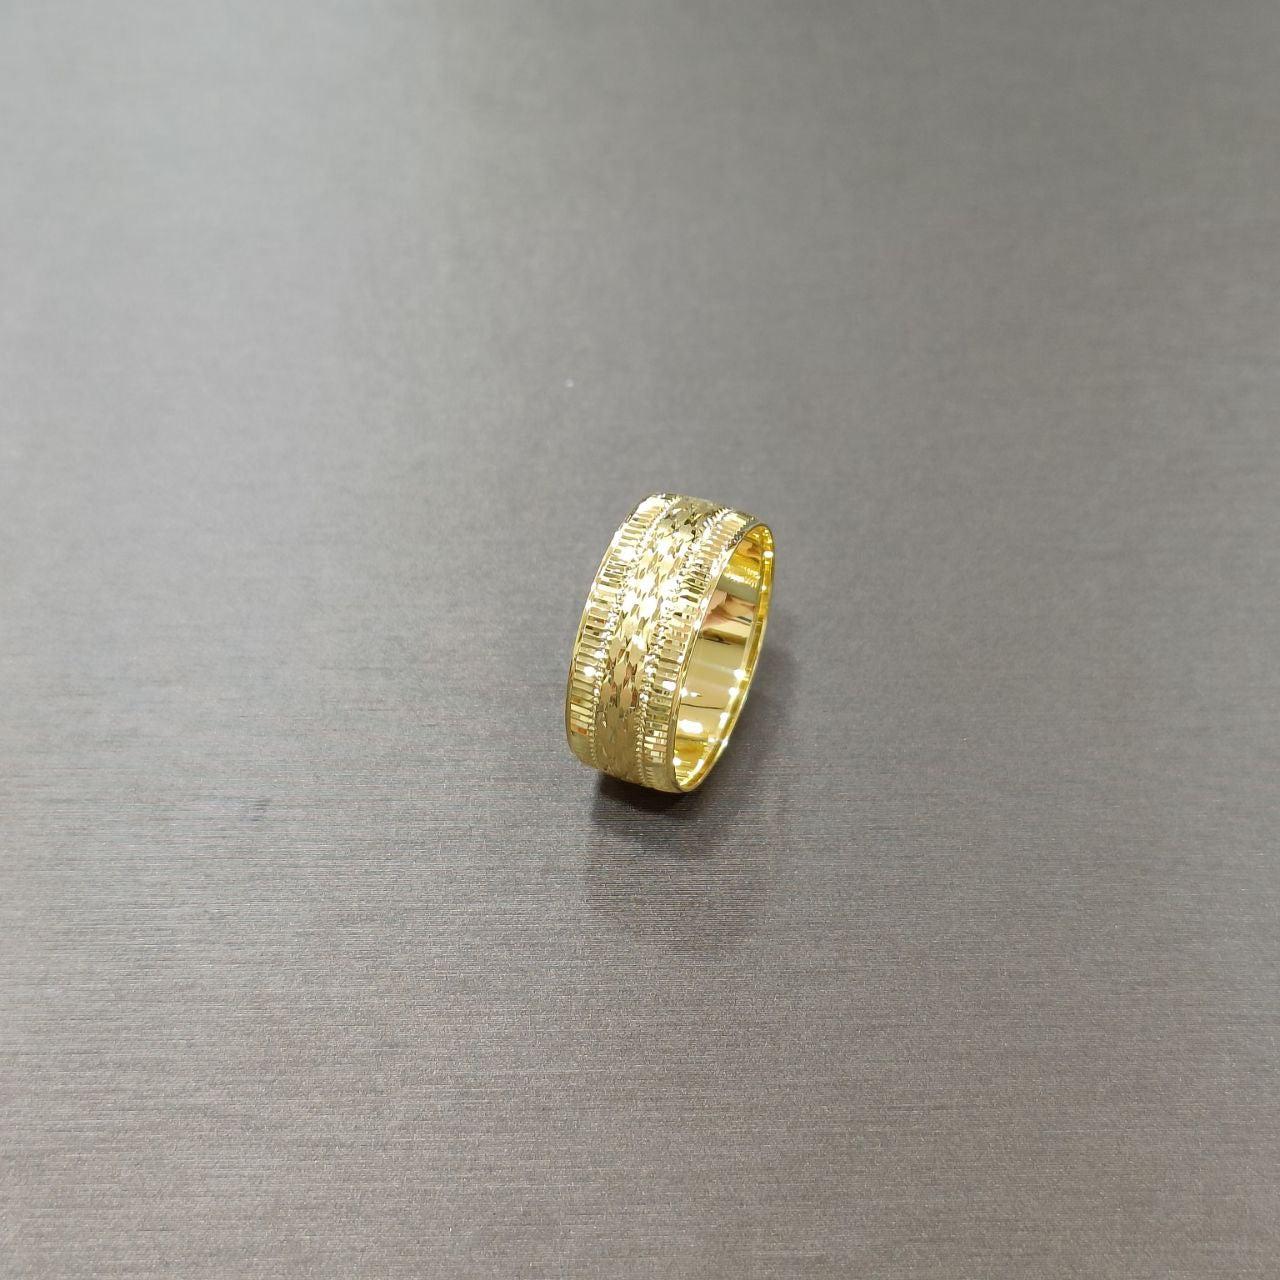 22k / 916 Gold Hollow Ring V6-916 gold-Best Gold Shop